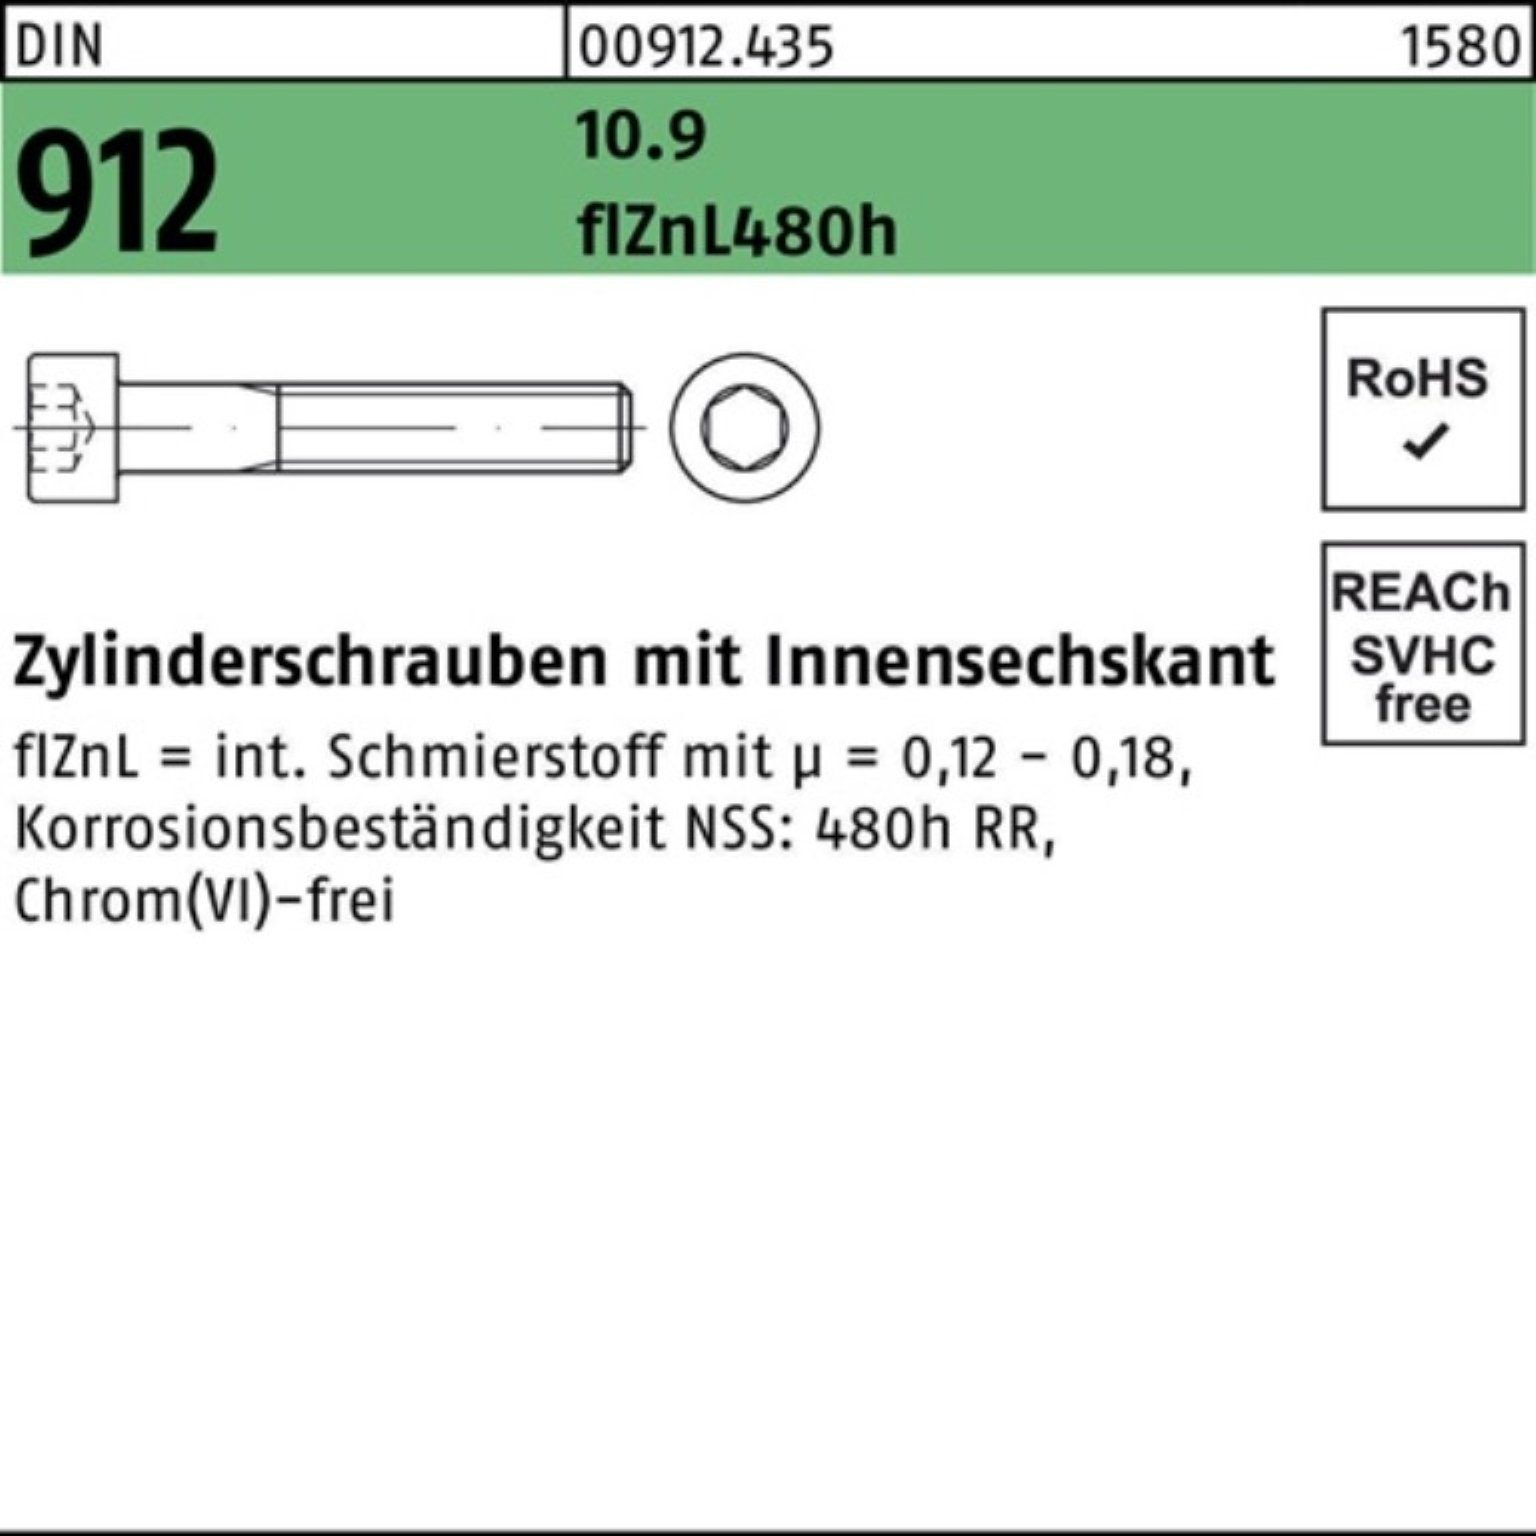 Reyher Zylinderschraube 100er Pack Zylinderschraube 10.9 Innen-6kt 912 M10x60 DIN flZnL/nc/x/x